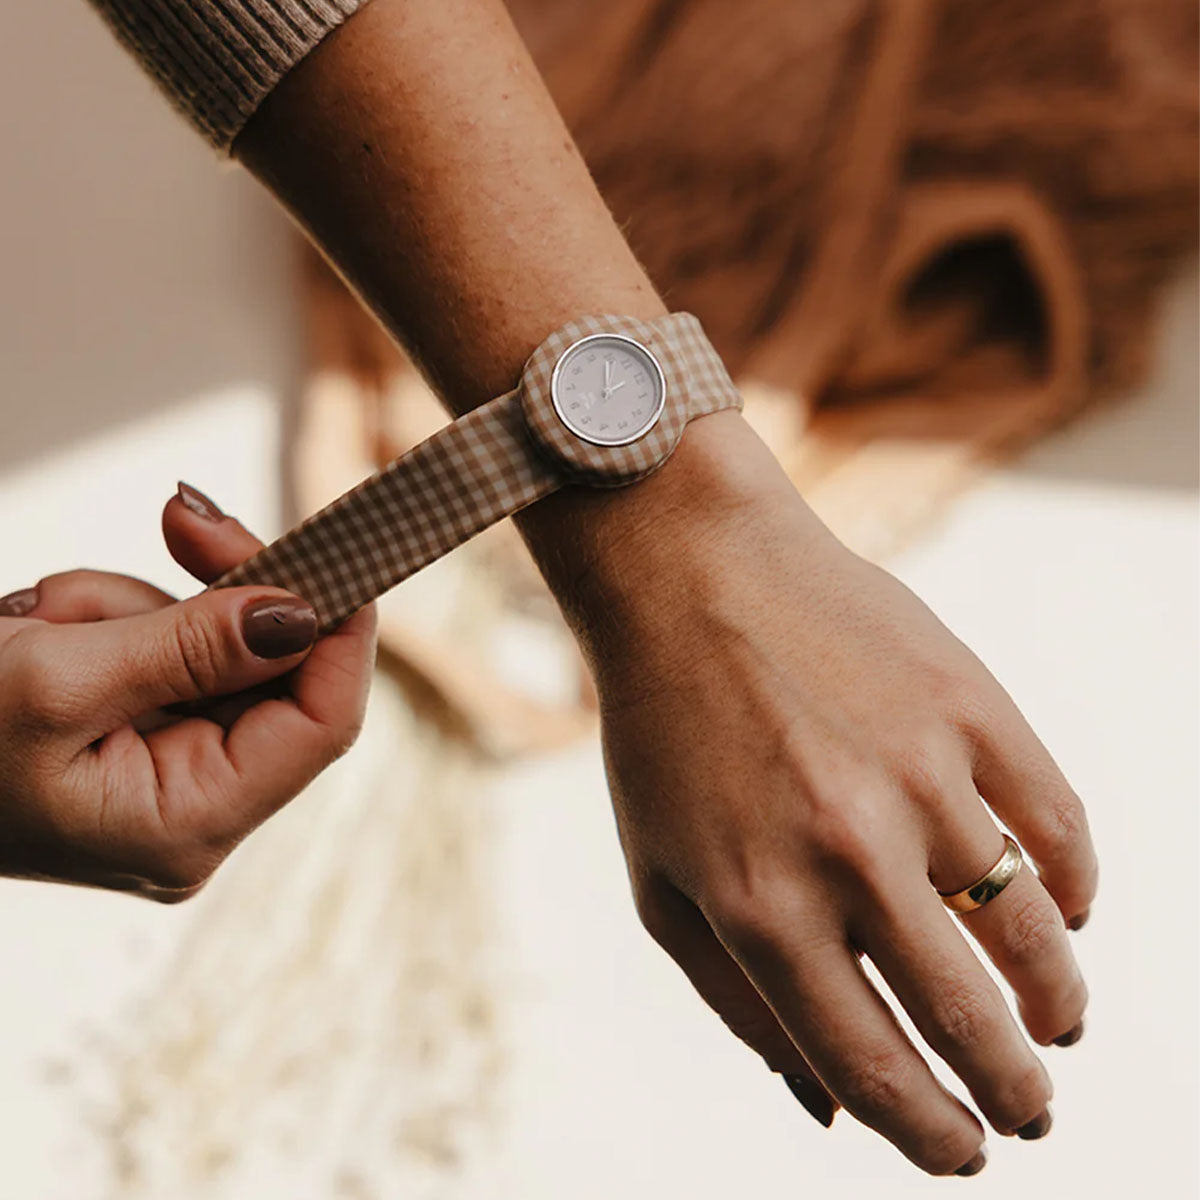 Het Mrs Ertha new strapies horloge soft squares is het ideale eerste horloge voor jouw kindje! Of misschien zelfs voor jou zelf? Dit horloge draagt lekker comfortabel en heeft prachtige, zachte kleuren. VanZus.